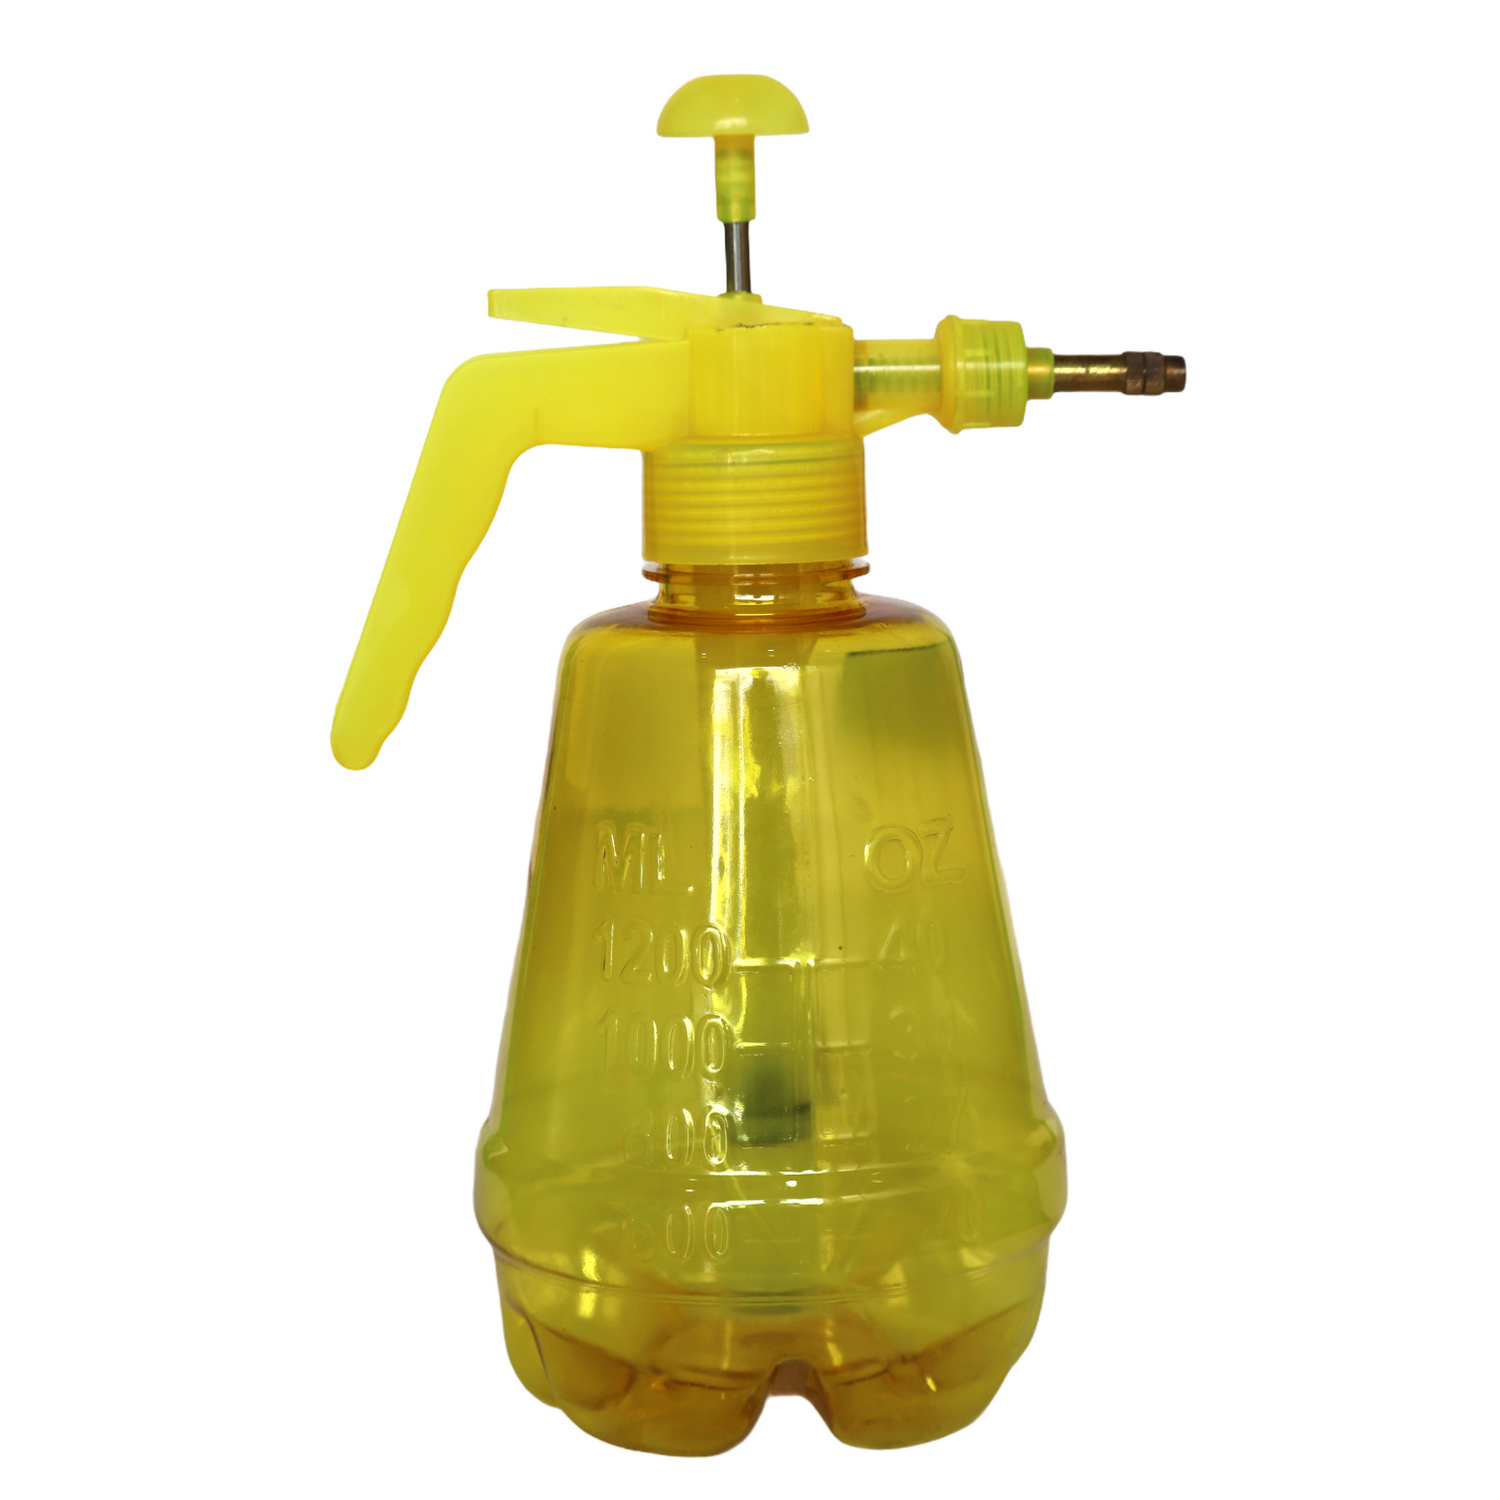 Water Sprayer Hand-Held Pump Pressure Garden Sprayer - 1.5 Litre